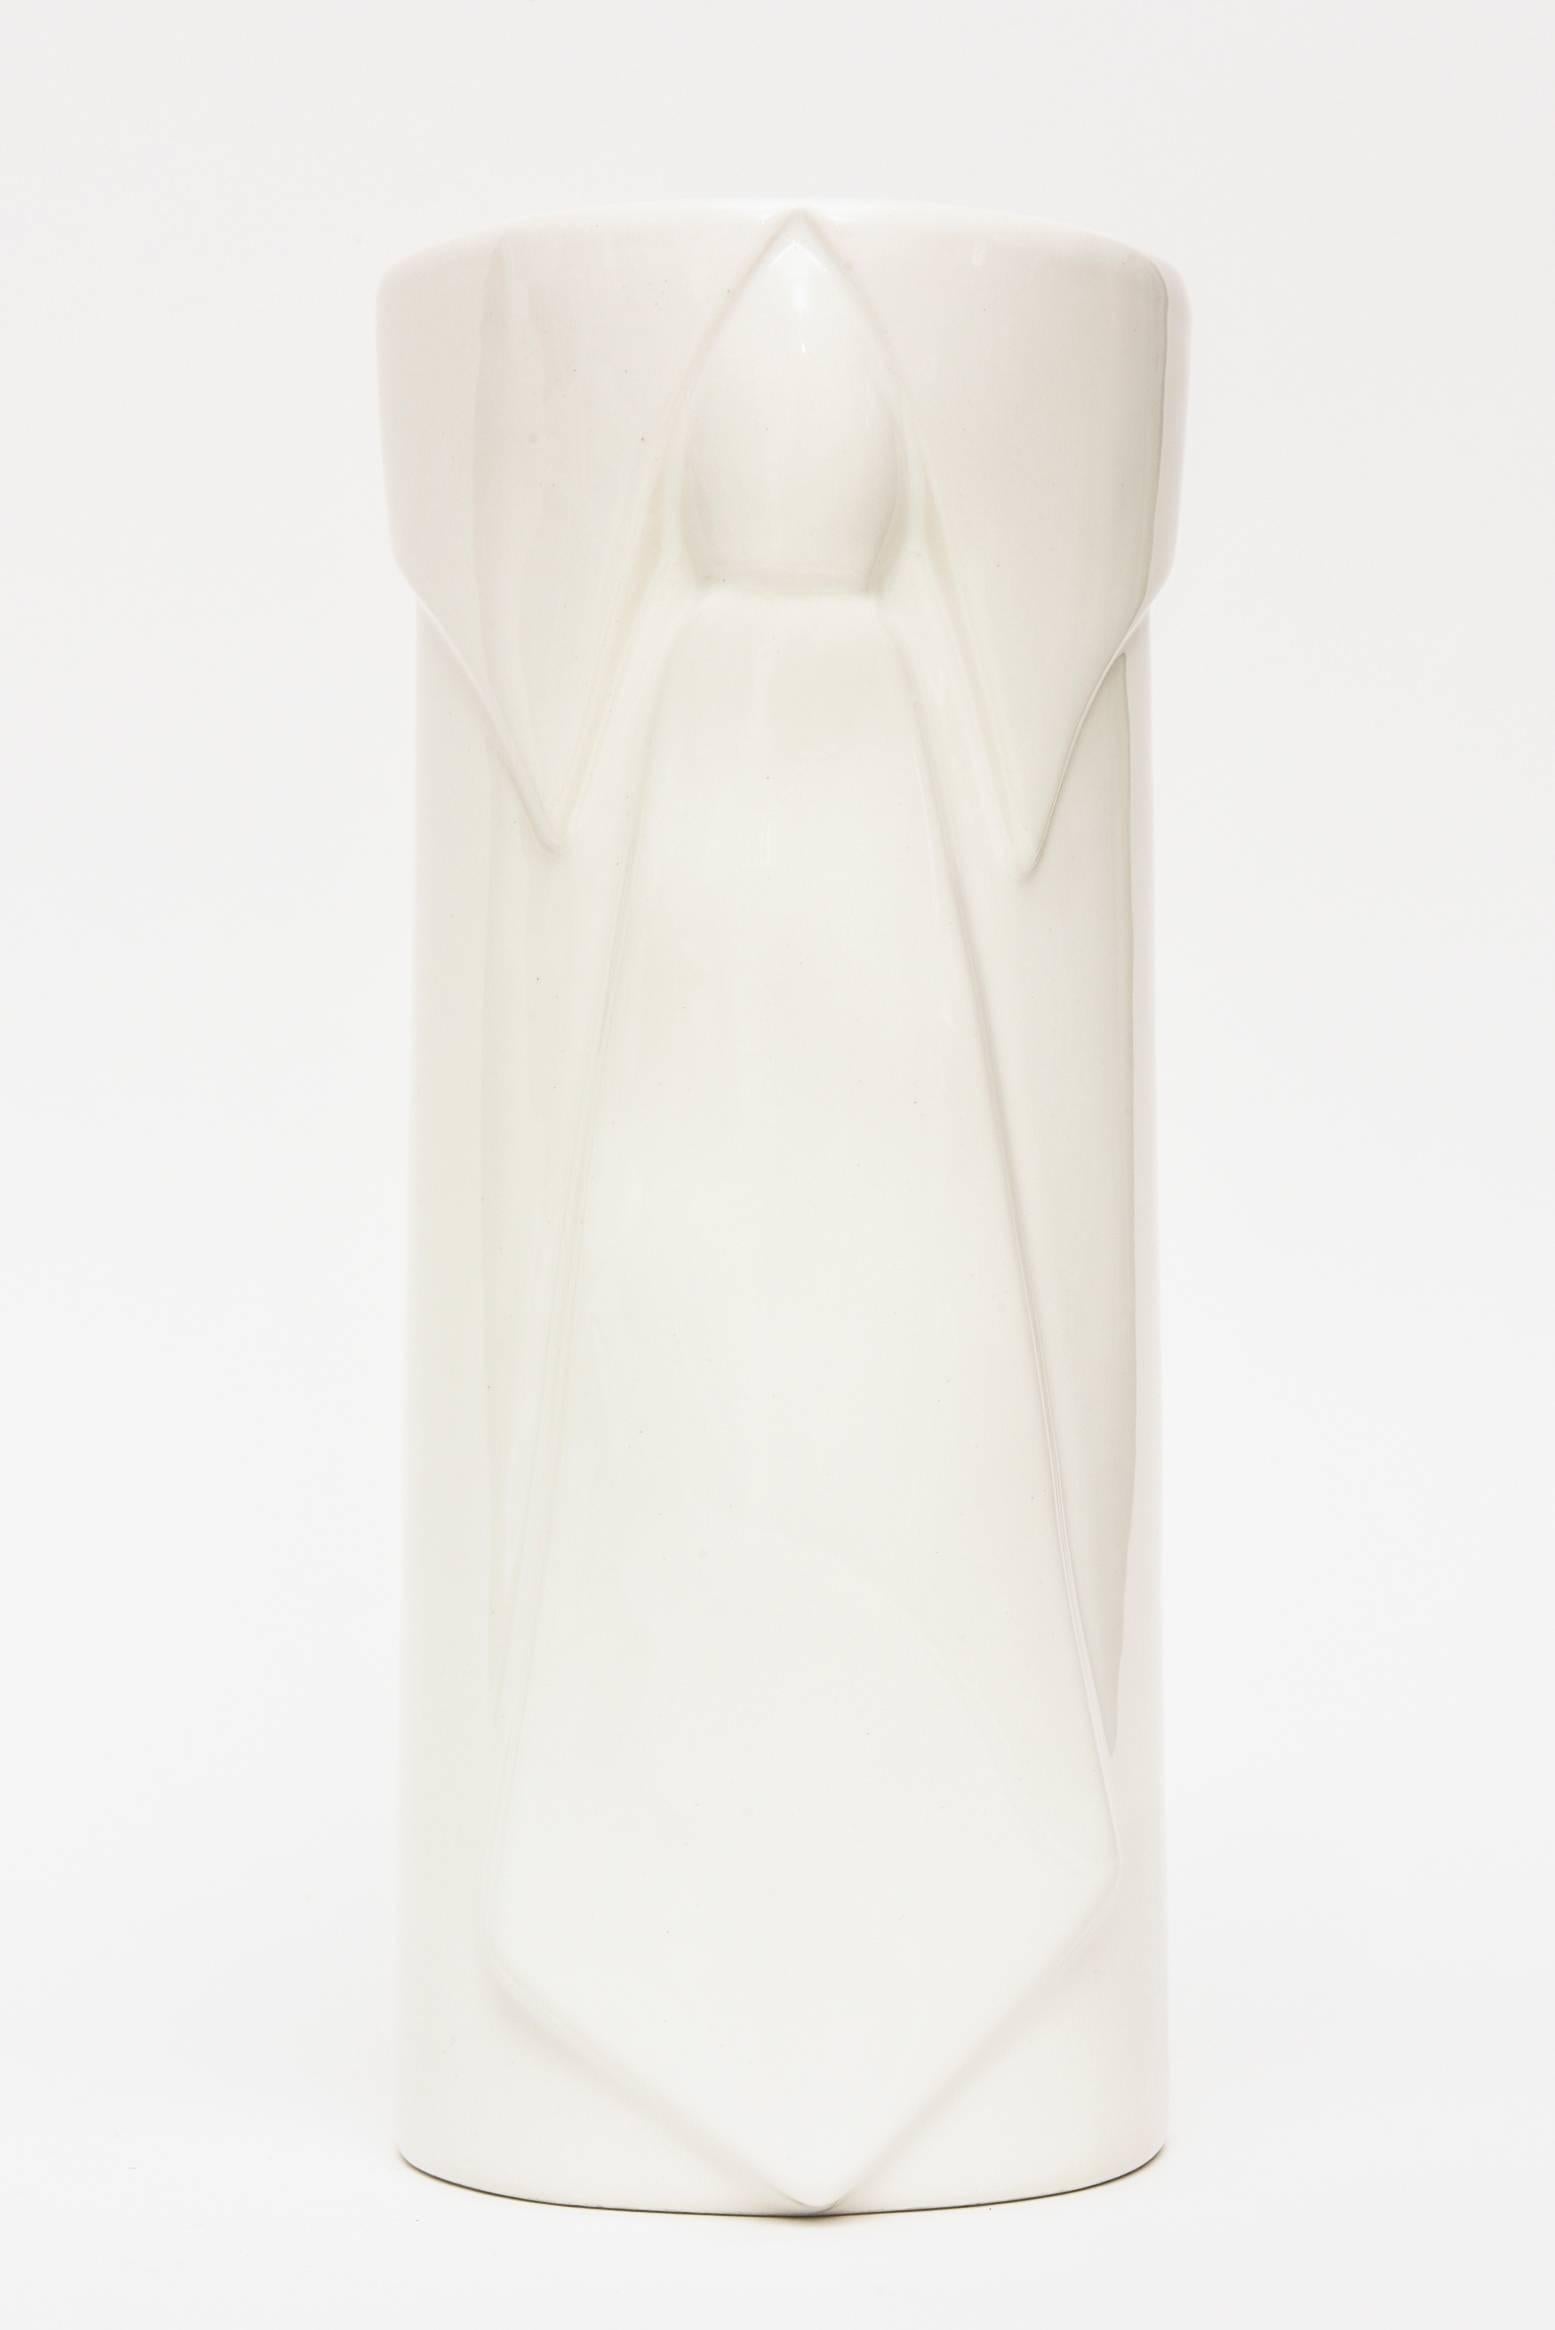 Raymor Pop Art Off-White Gazed Ceramic Vase Italian Vintage For Sale 3